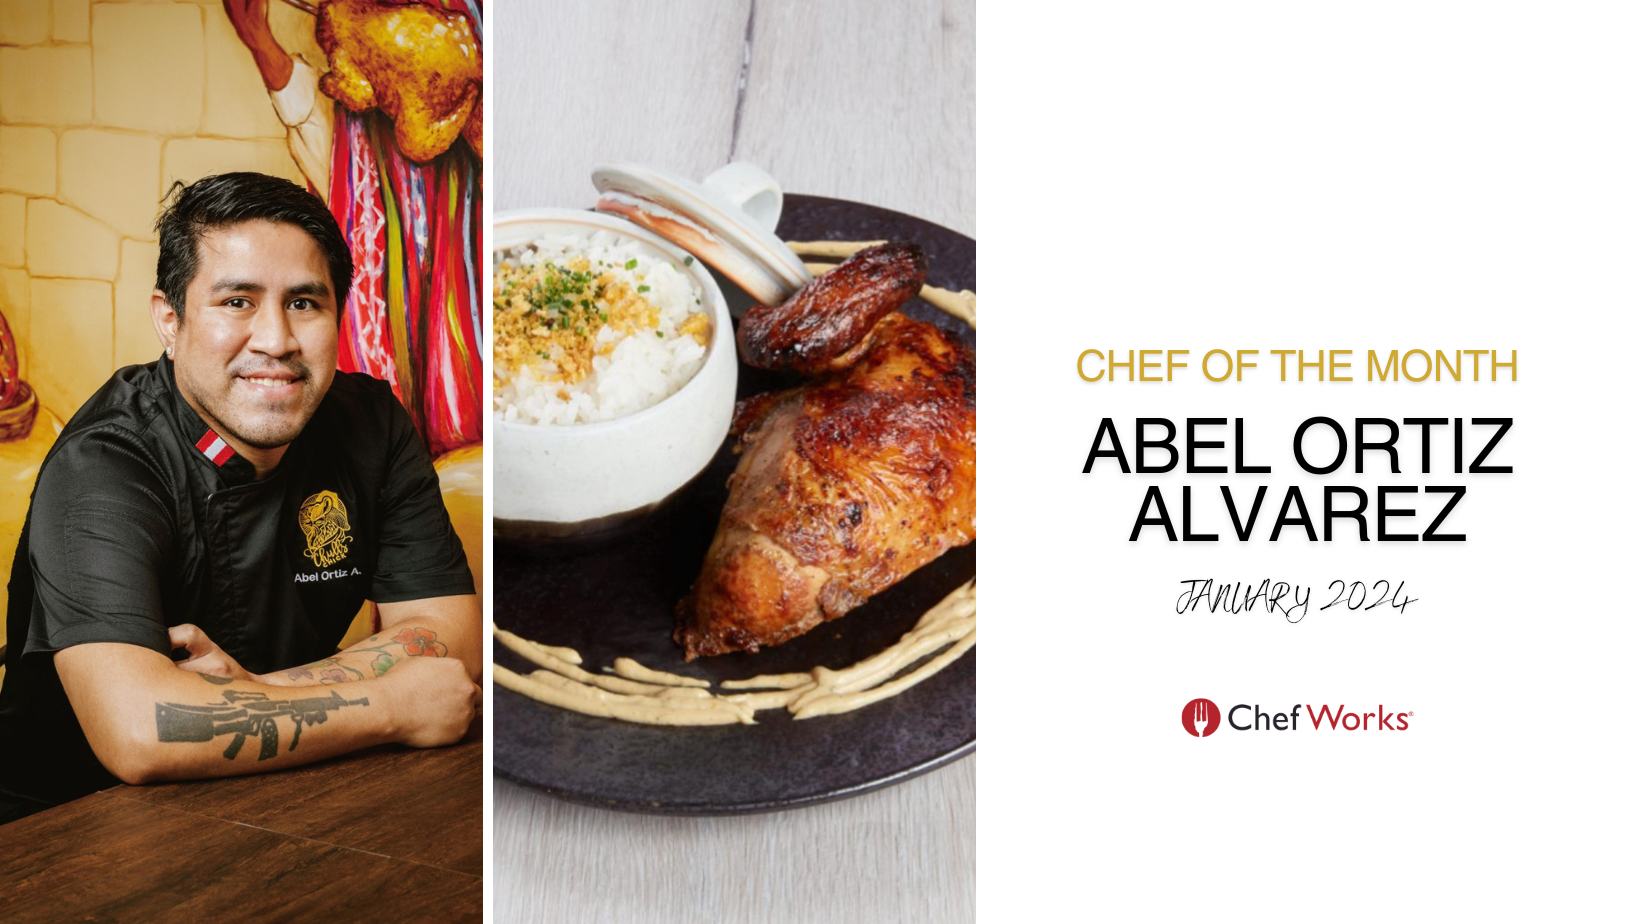 Chef Of The Month - Abel Ortiz Alvarez